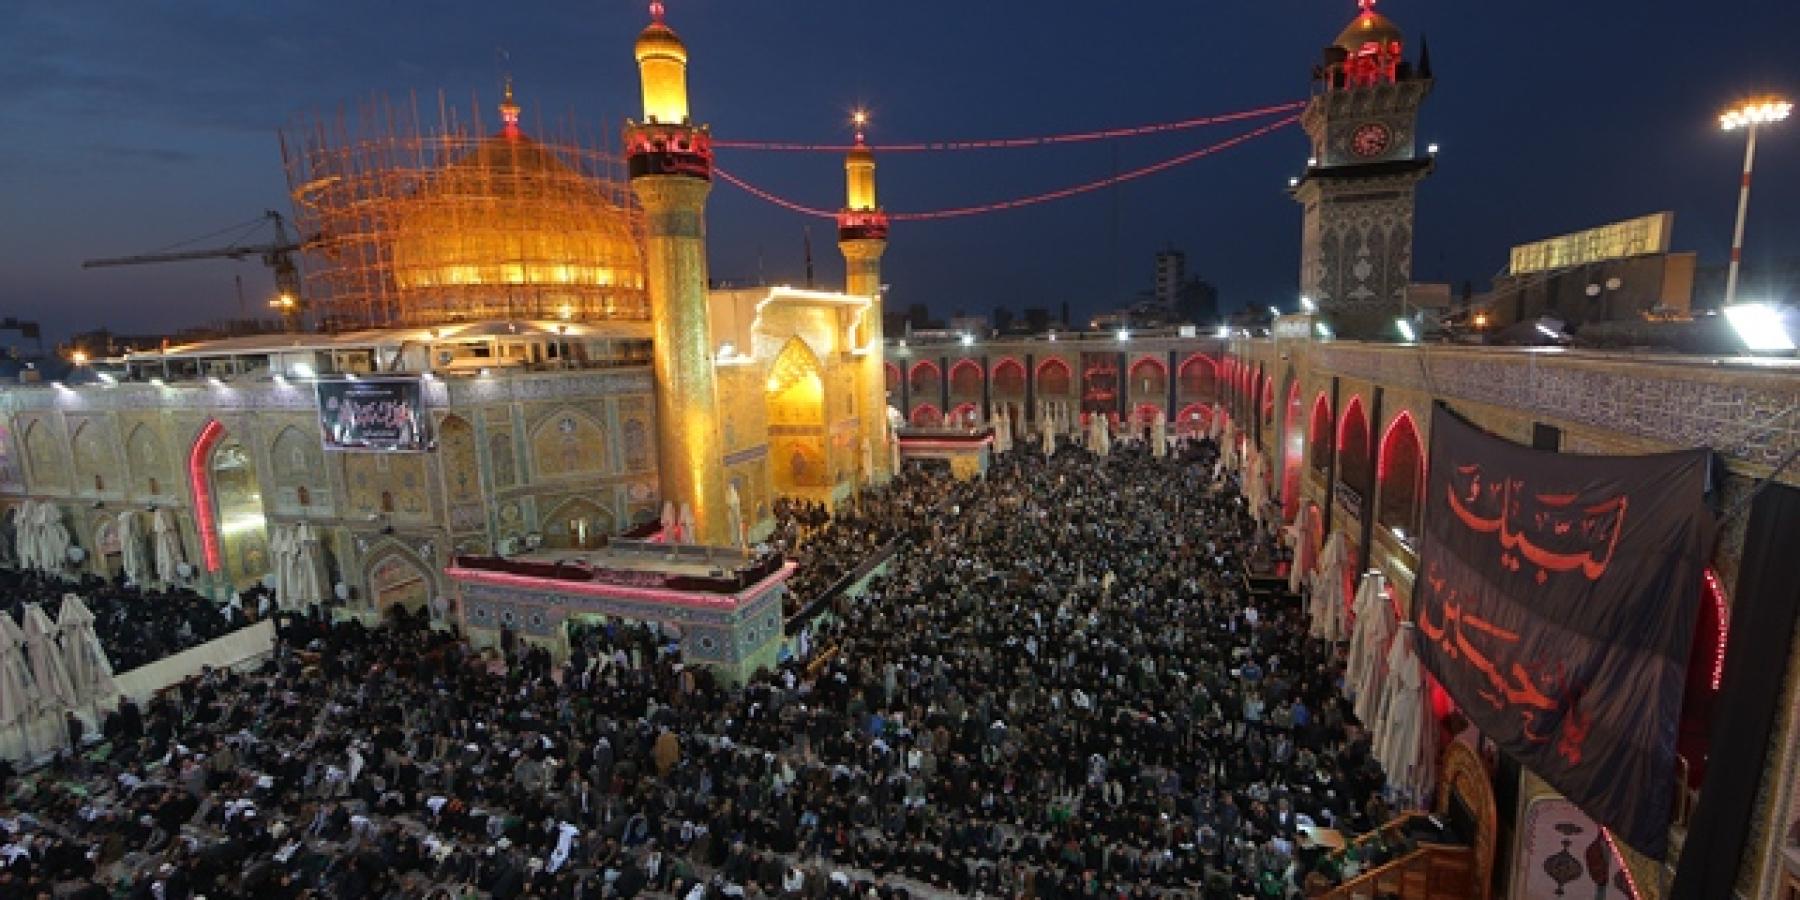 حشود الزائرين المليونية تتوافد على الحرم العلوي الطاهر في ذكرى وفاة الرسول الأعظم محمد (صلى الله عليه وآله وسلم)